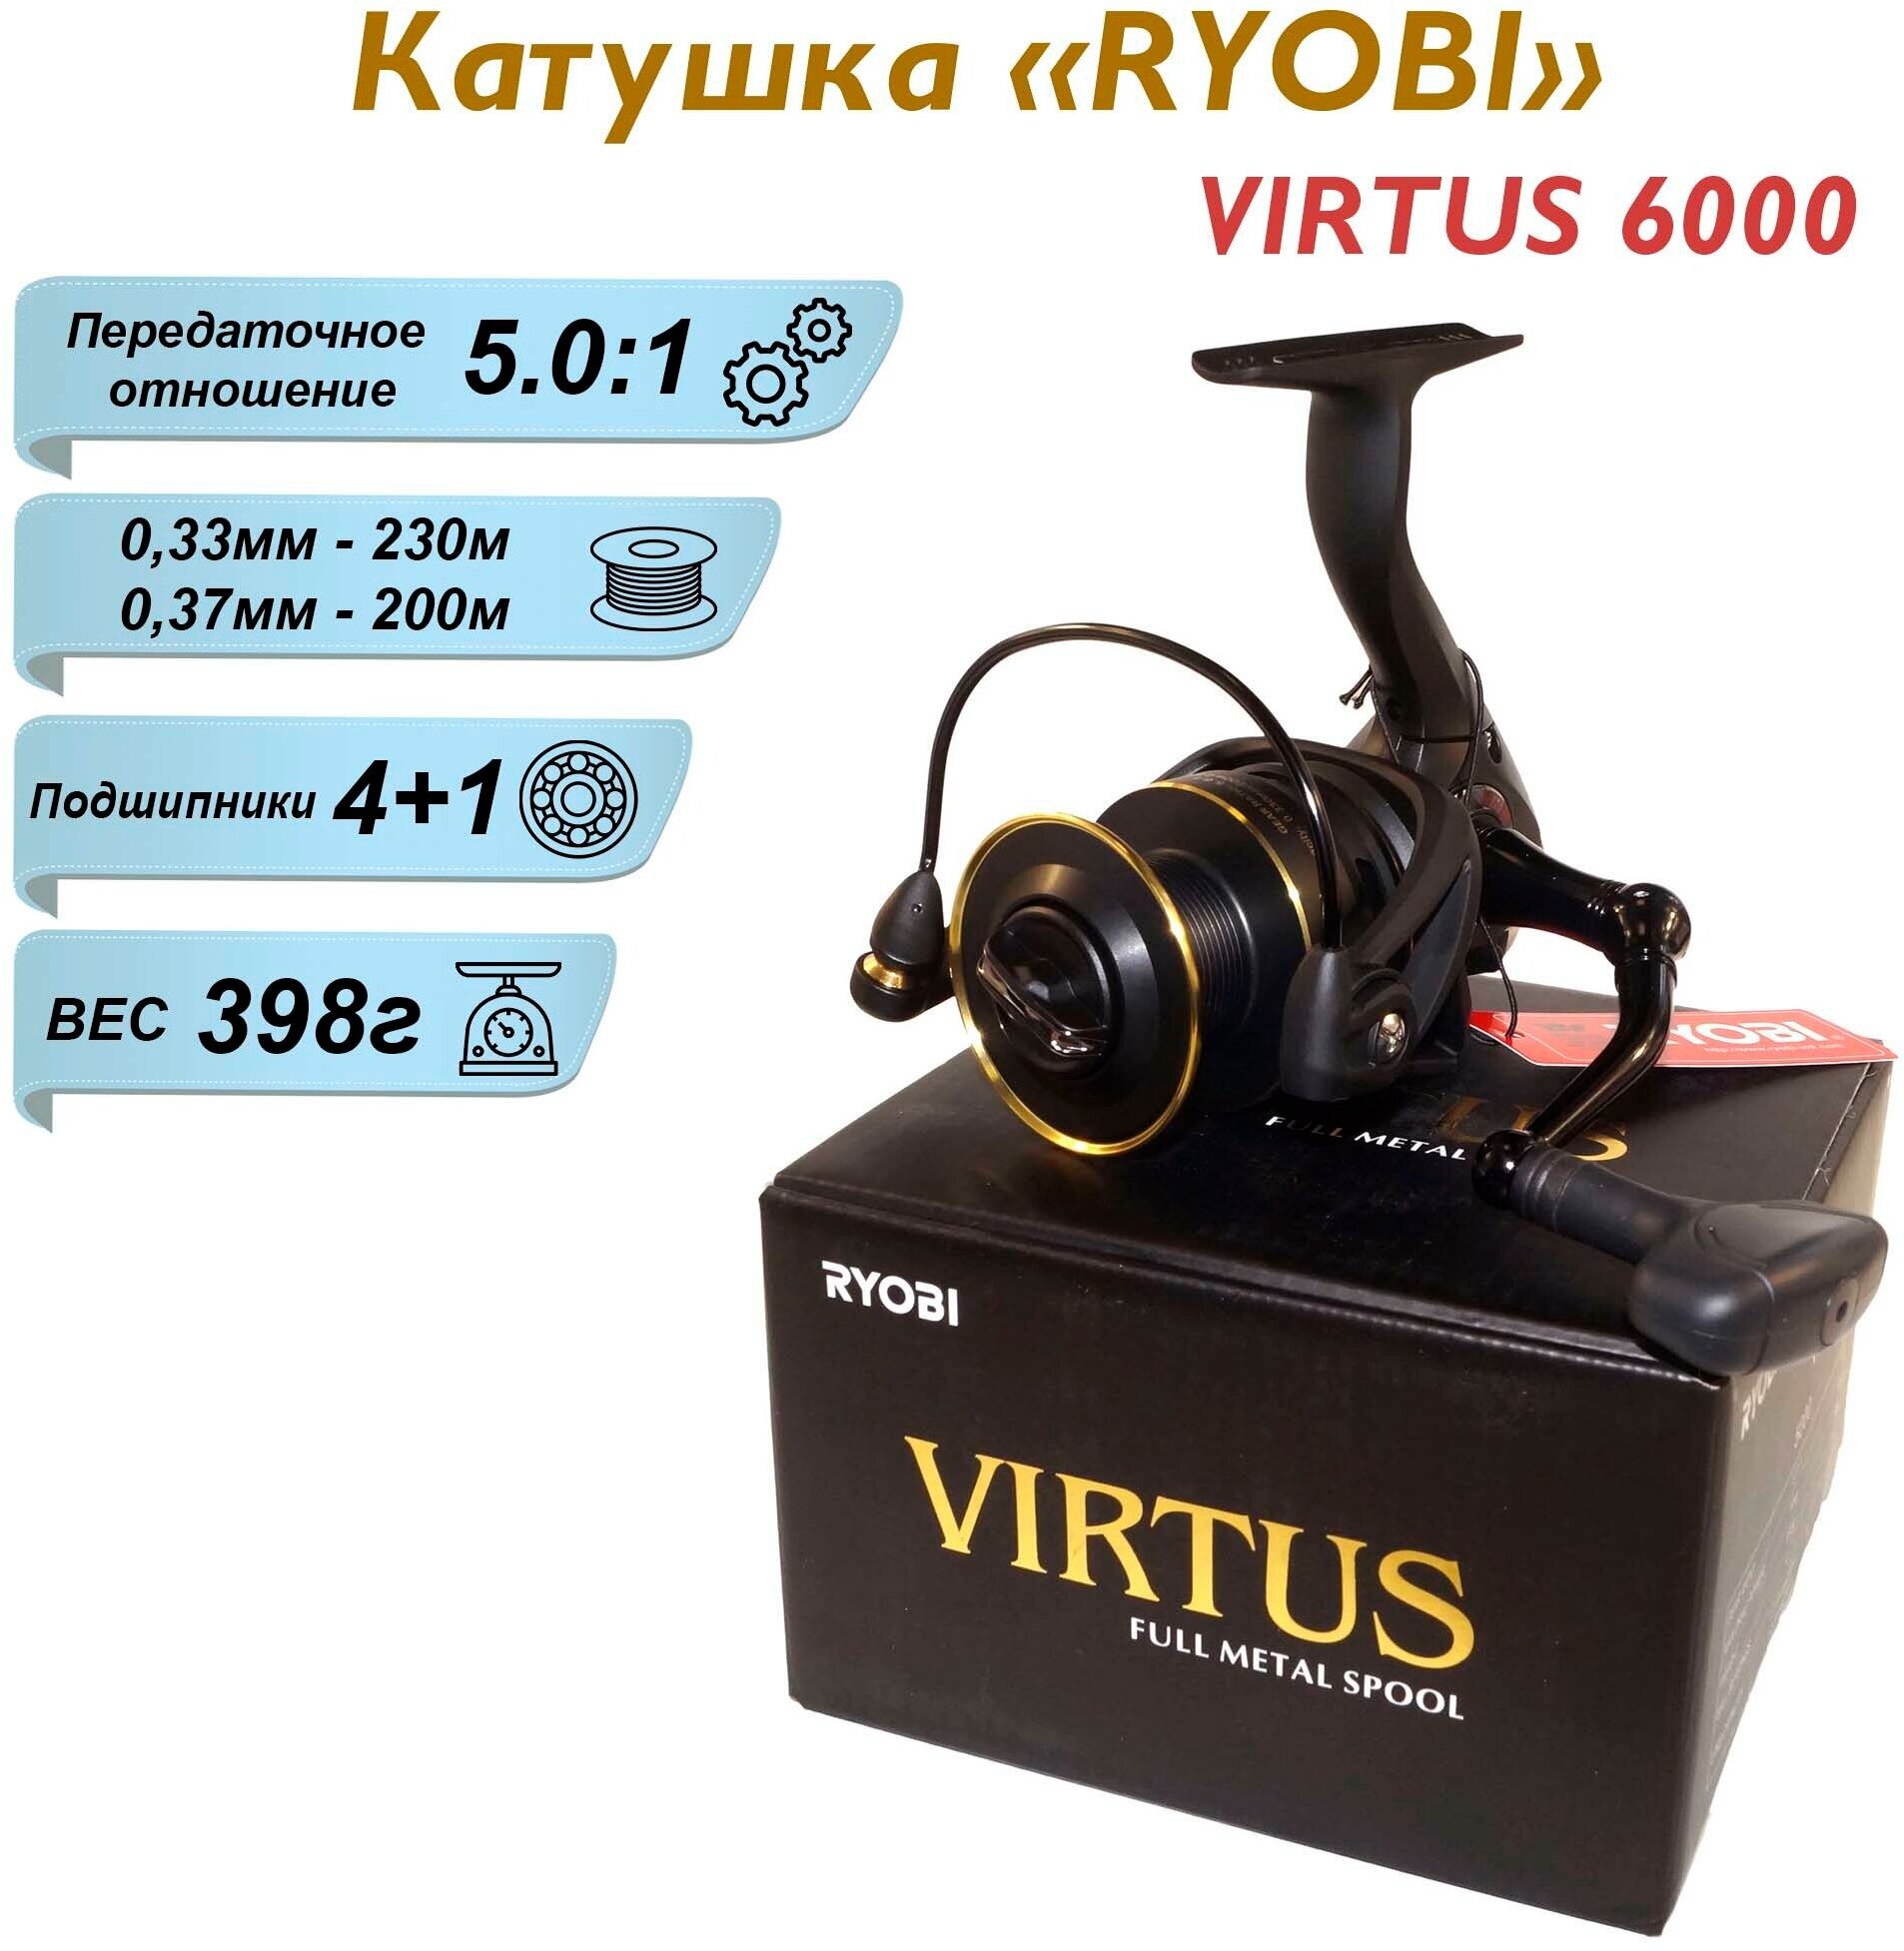 Катушка Ryobi VIRTUS 6000